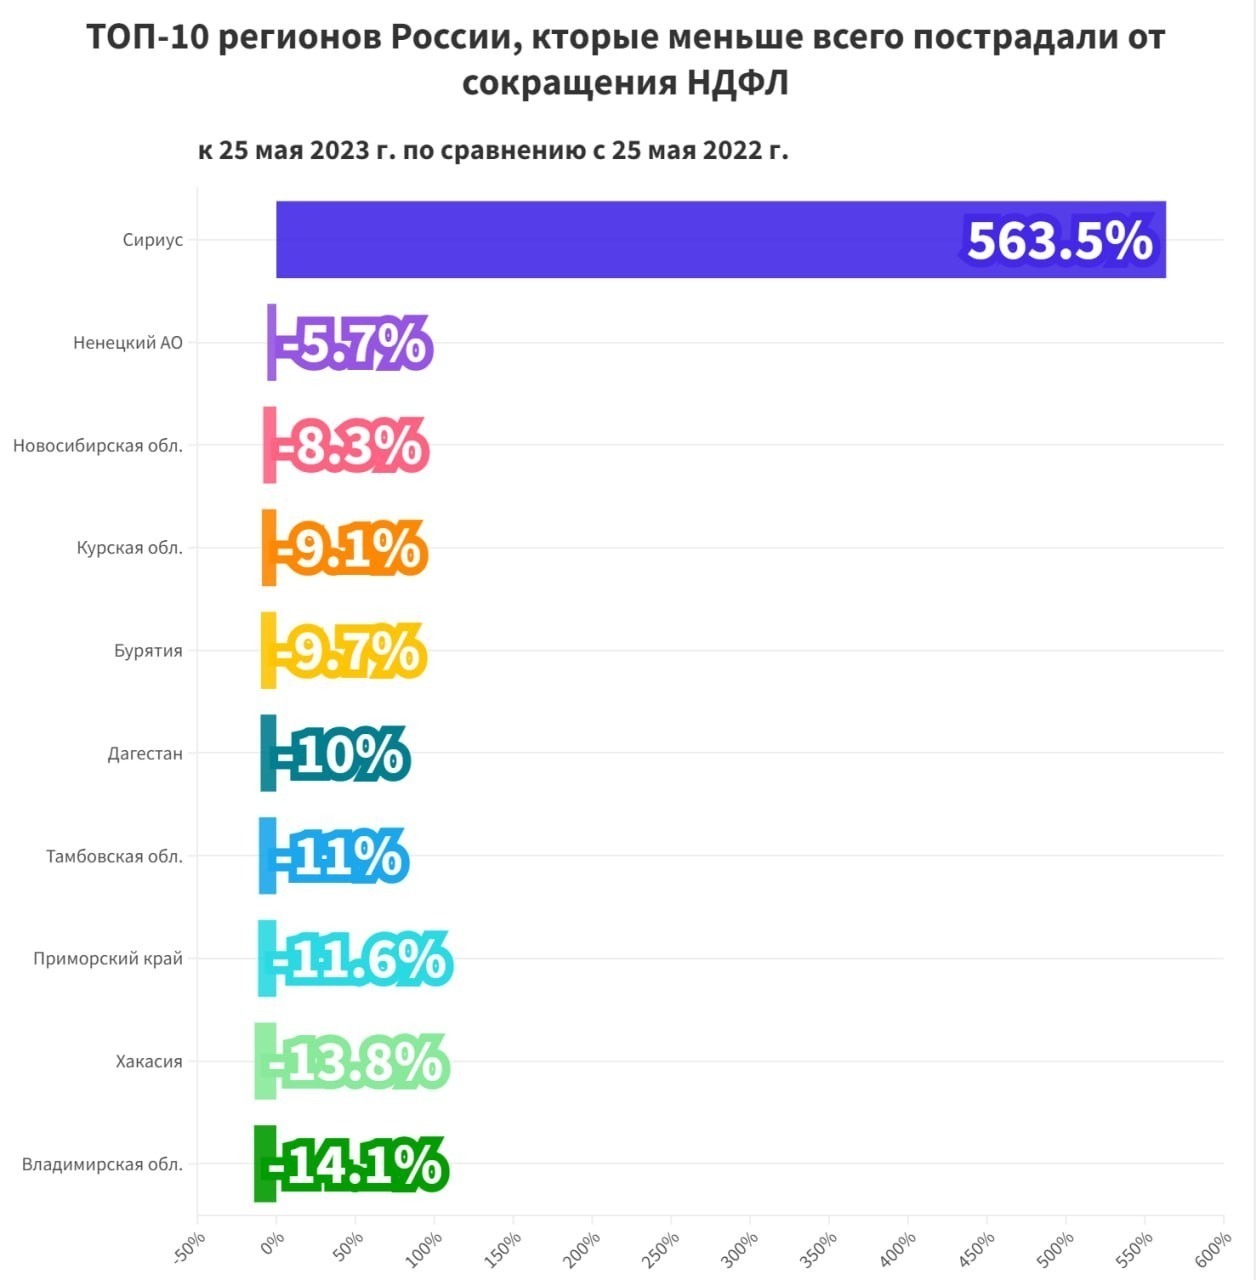 ТОП-10 регионов России, меньше всего пострадавших от сокращения сборов НДФЛ